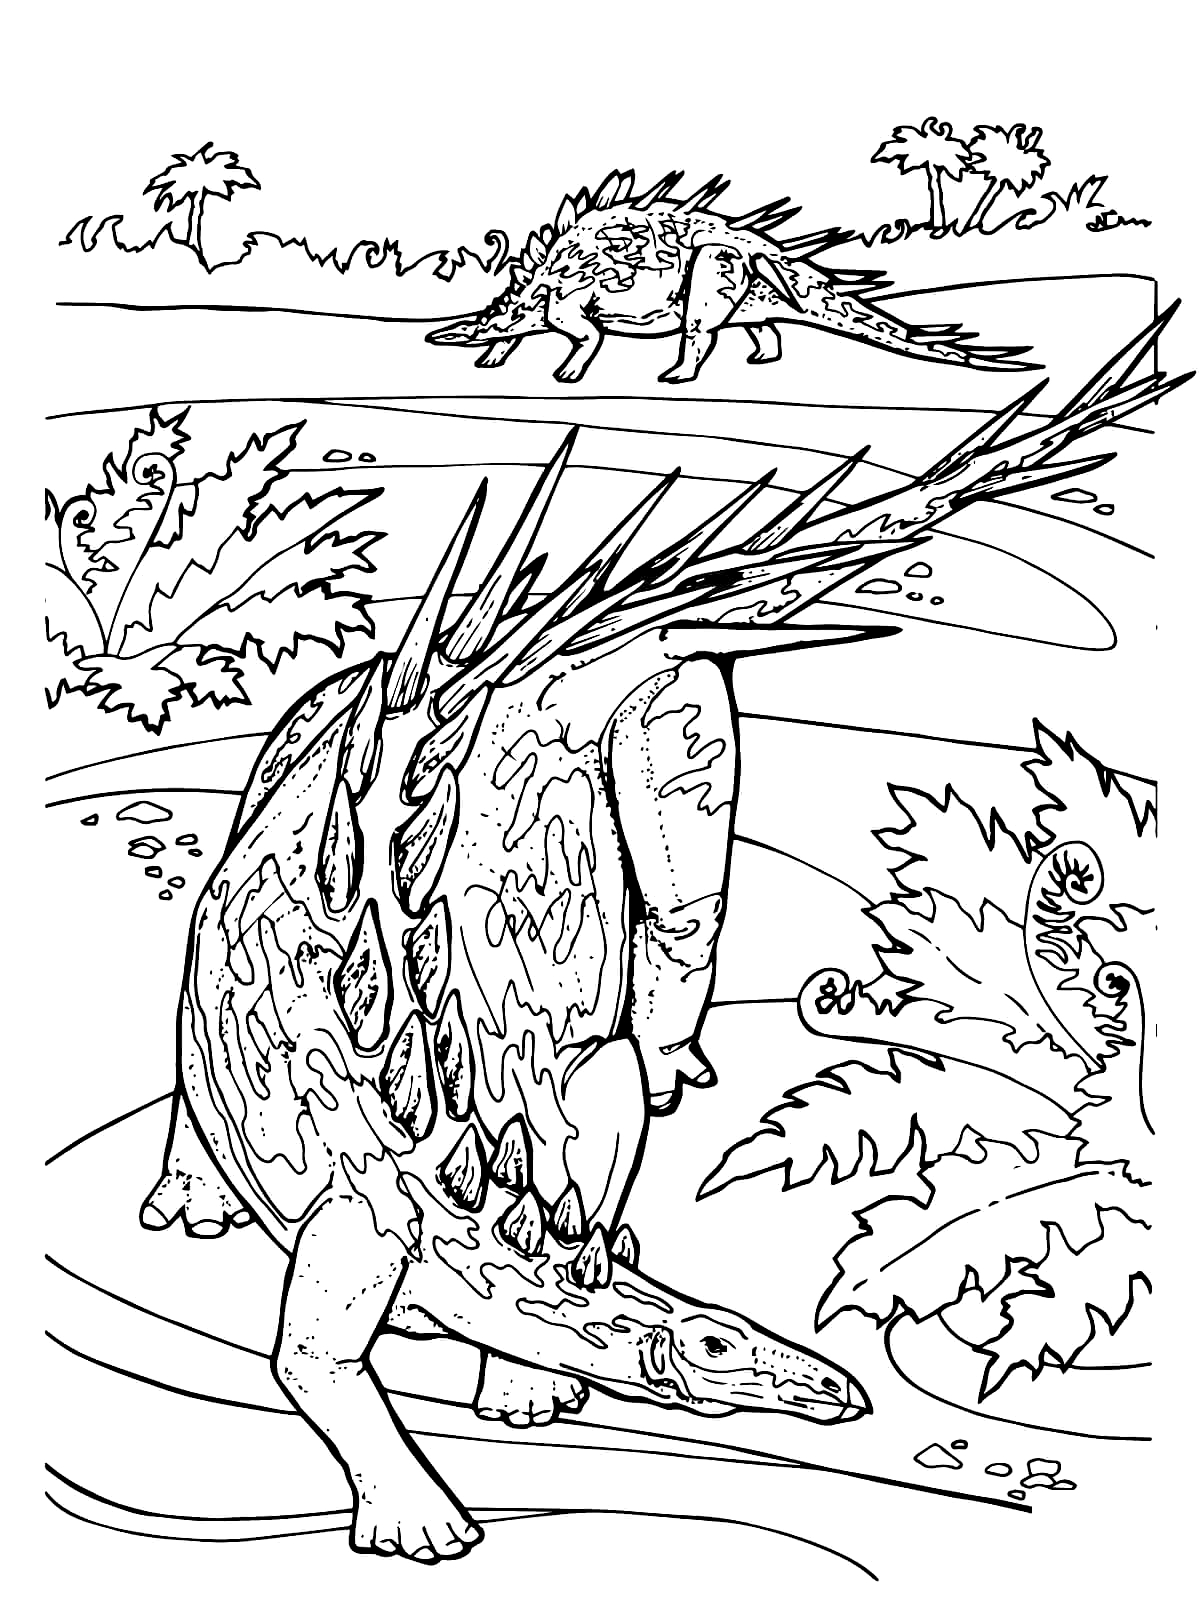 Dibujo 05 de Jurassic World para imprimir y colorear